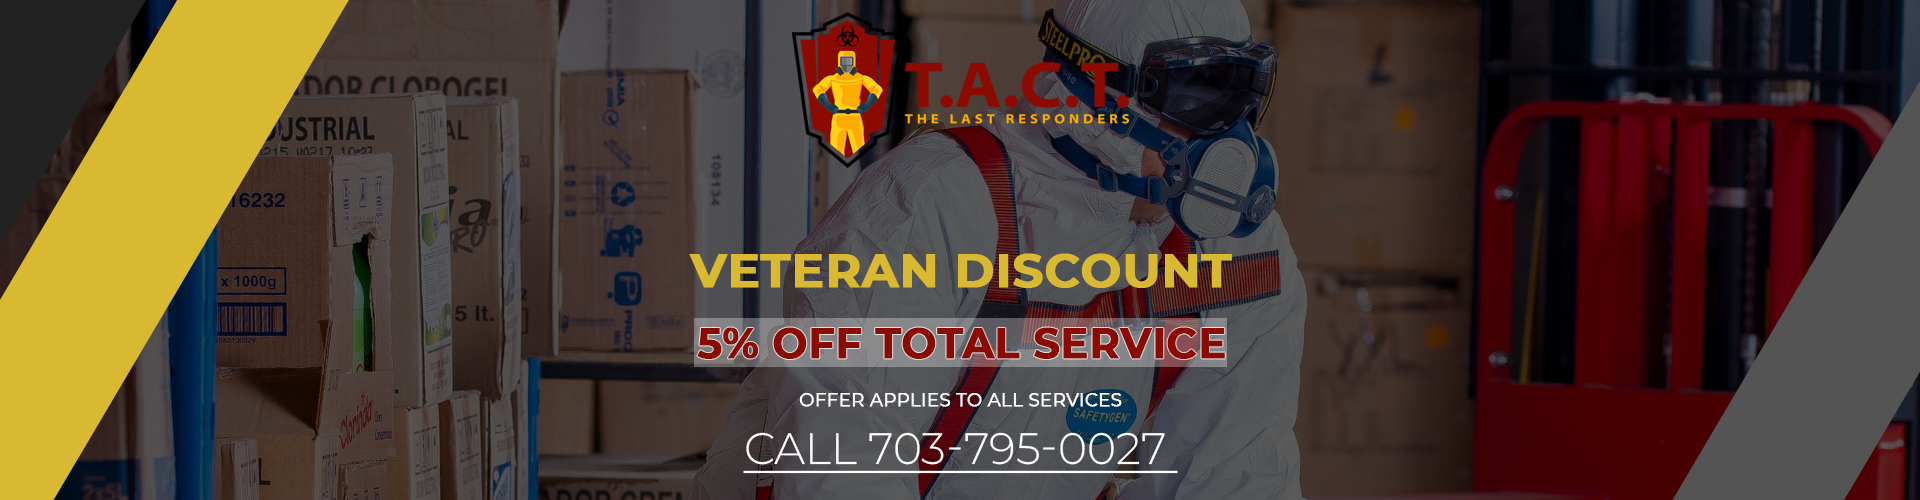 banner_veteran discount